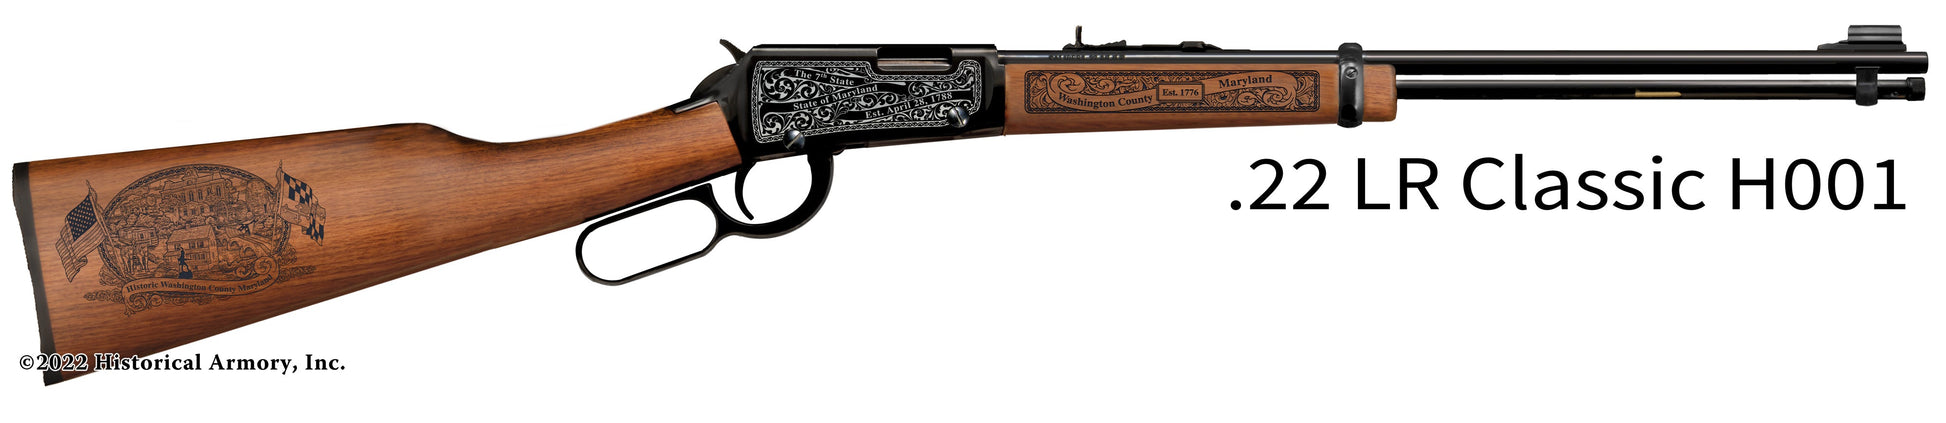 Washington County Maryland Engraved Henry H001 Rifle